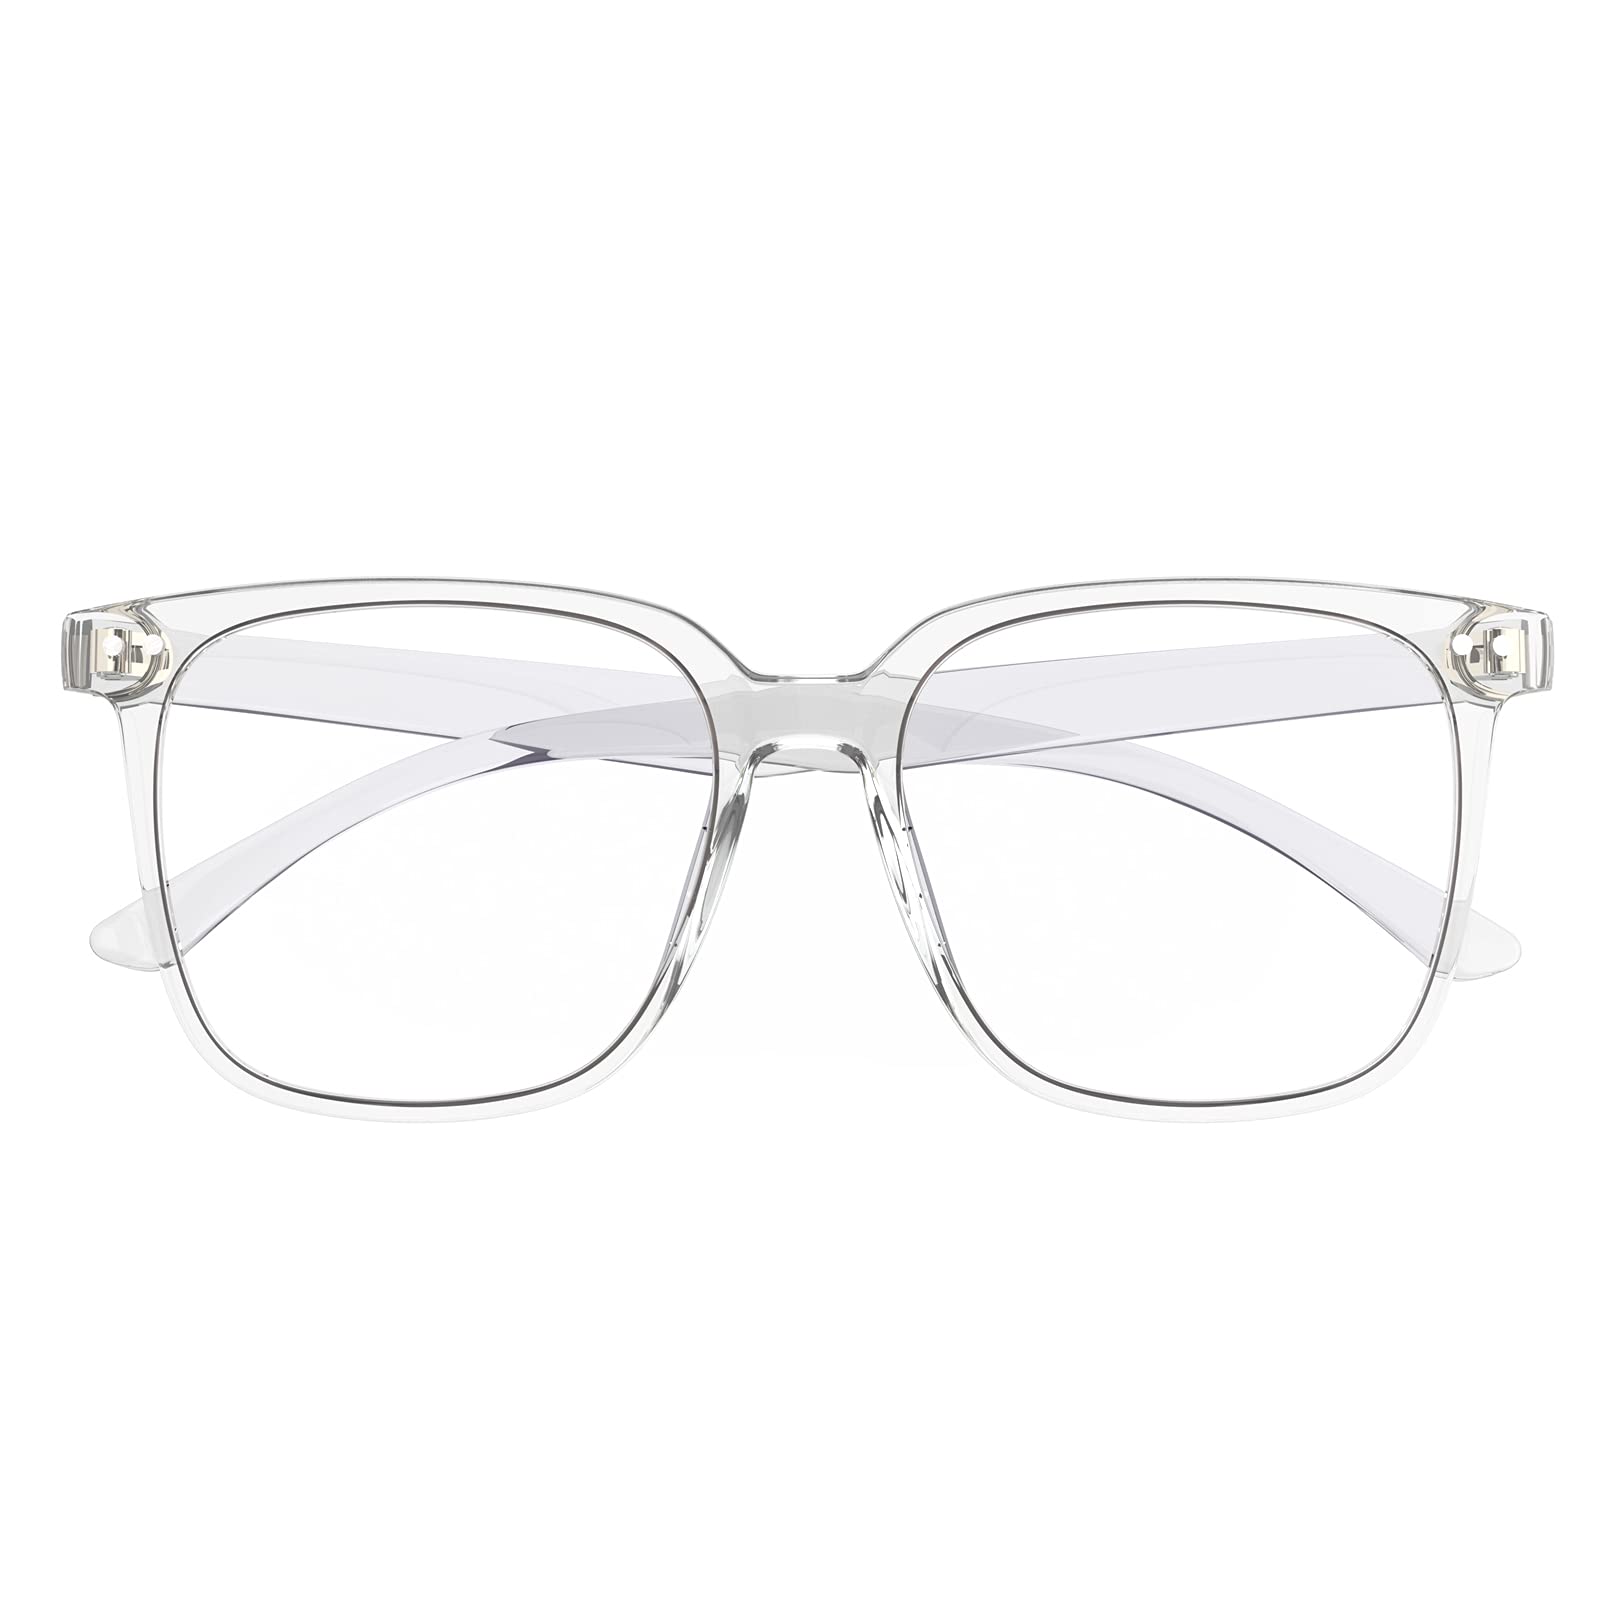 DTIUGUTAE Blue Light Blocking Glasses for Women Men Anti Glare Reduce Eyeglasses Computer Oversized(Clear)